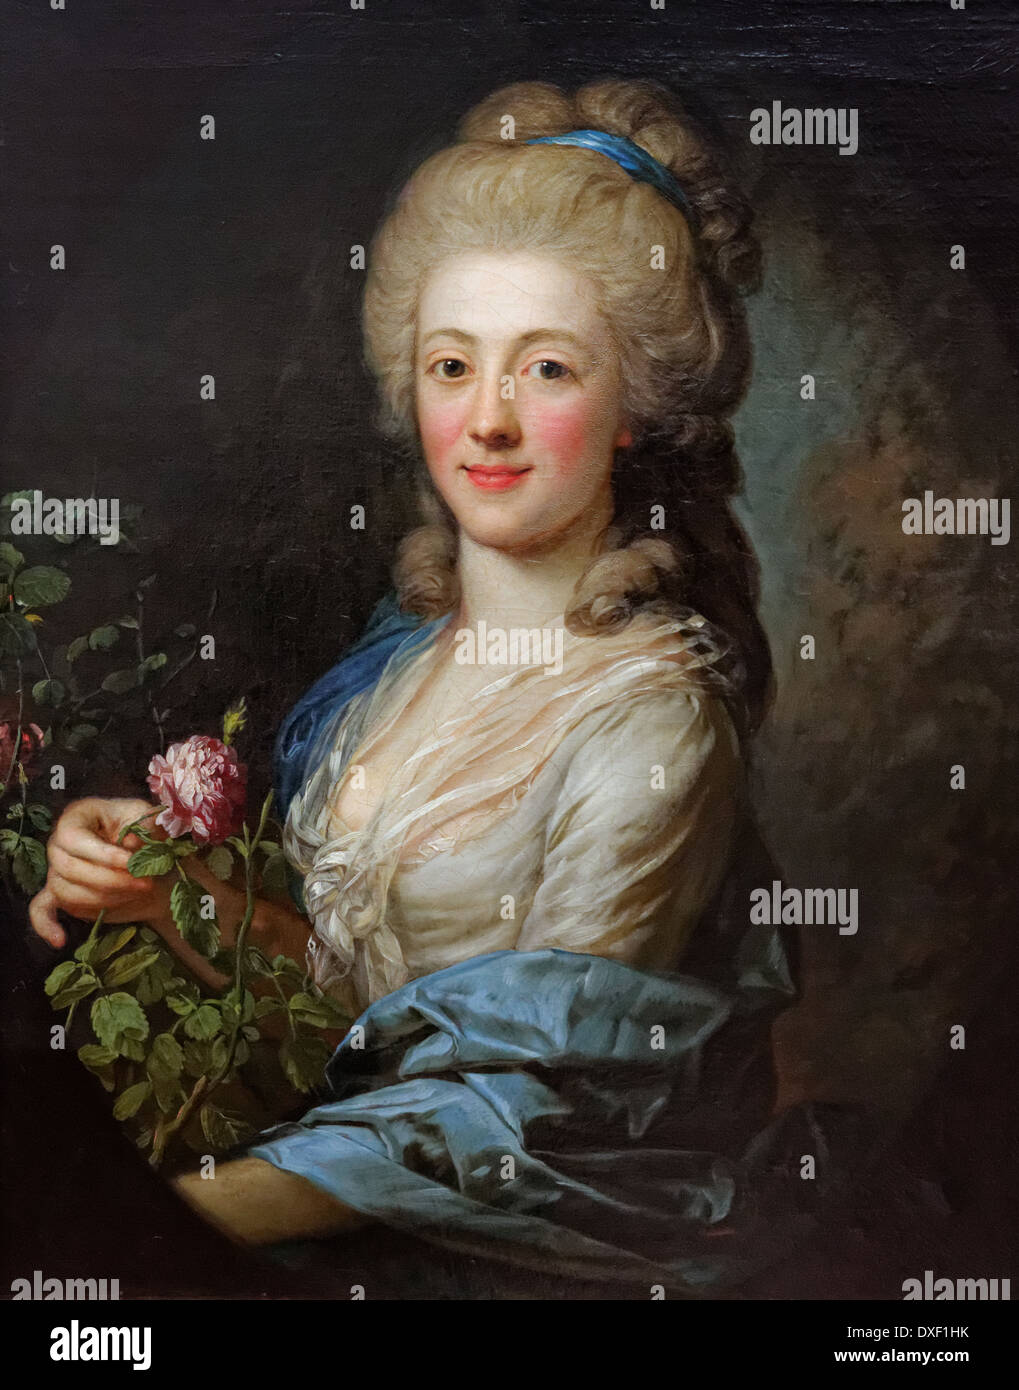 Anton Graff - Juliane Wilhelmine Bause - 1765 - XVIII Jahrhundert - deutsche Schule - Alte Nationalgalerie - Berlin Stockfoto